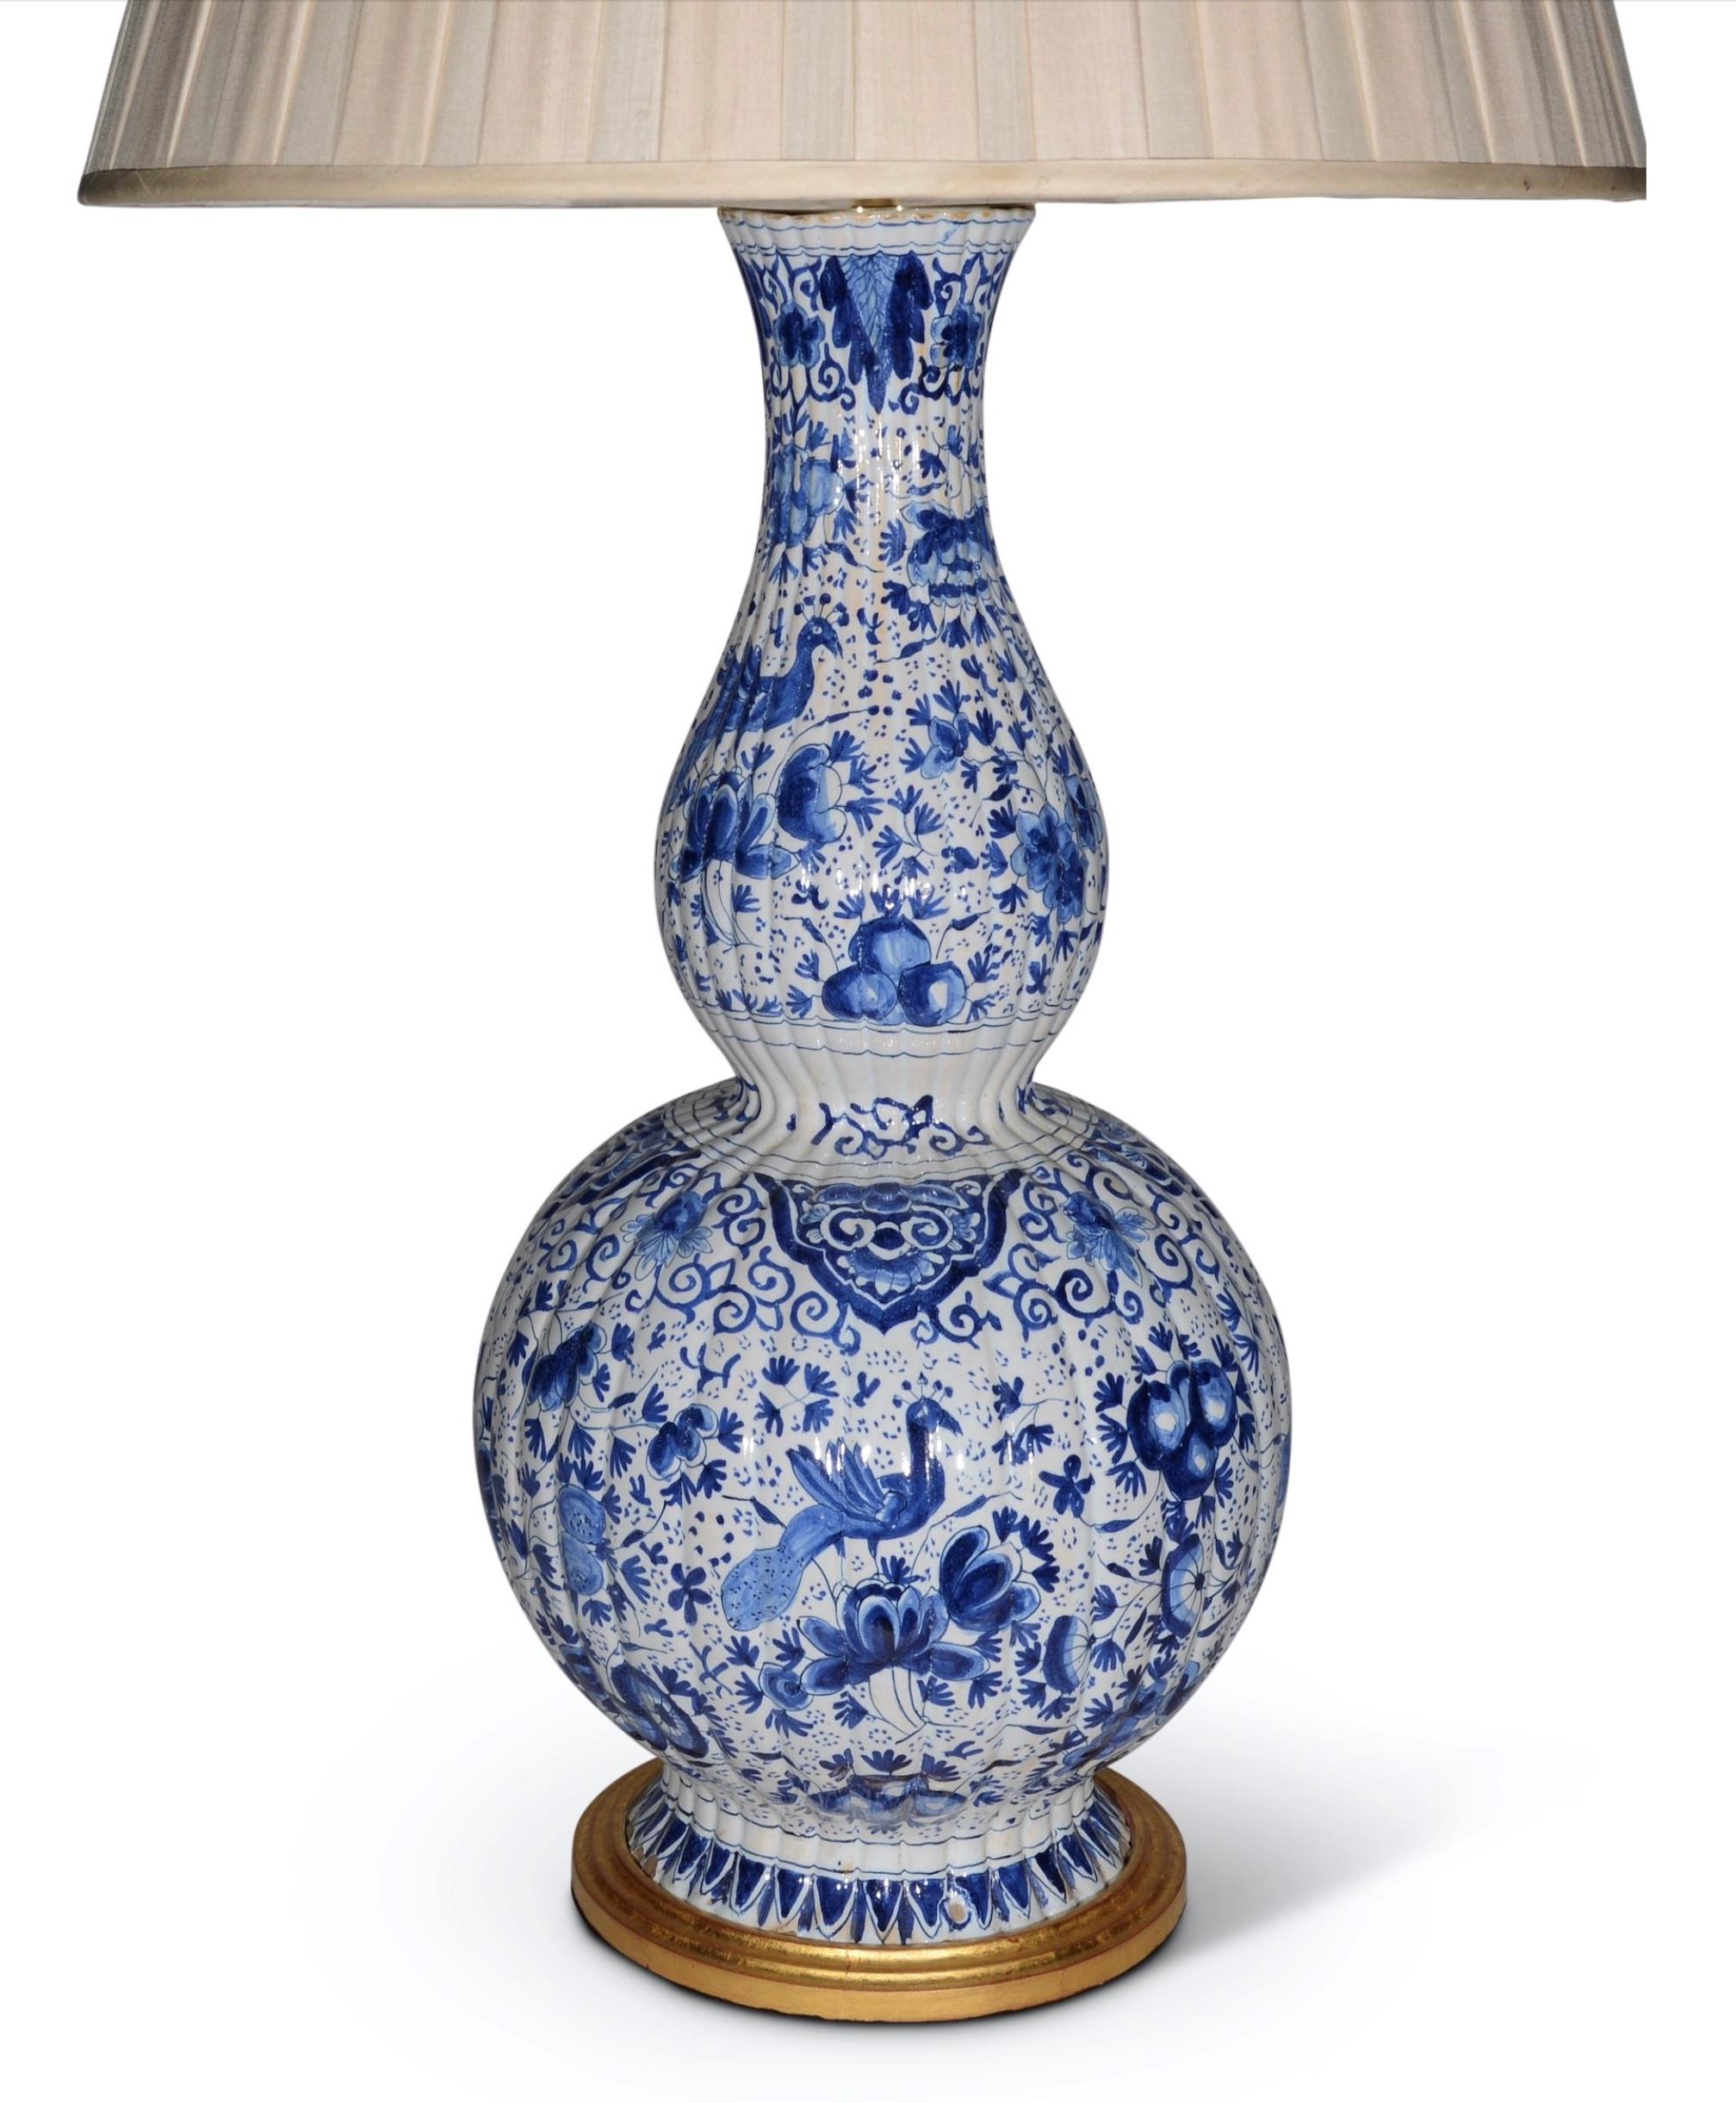 Ein prächtiges Paar von  große niederländische Delft-Vasen. Doppelte Kürbisform, durchgehend mit exotischen Vögeln inmitten von stilisiertem Blumen- und Blätterdekor in Blautönen auf weißem Grund verziert. Jetzt als Lampen mit handvergoldeten,